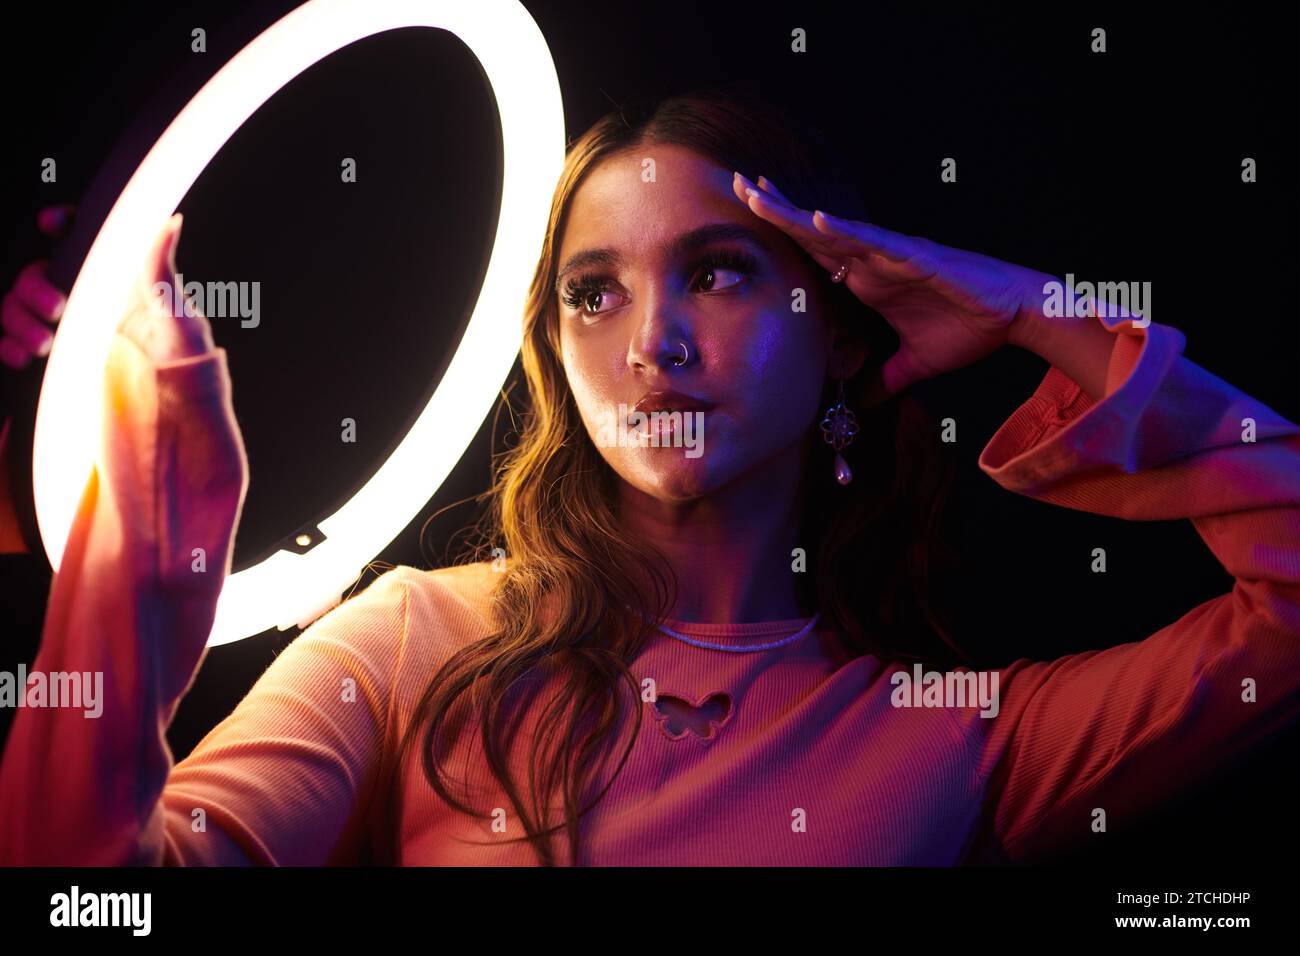 Jeune femme avec le perçage du nez posant sous la lumière annulaire Banque D'Images